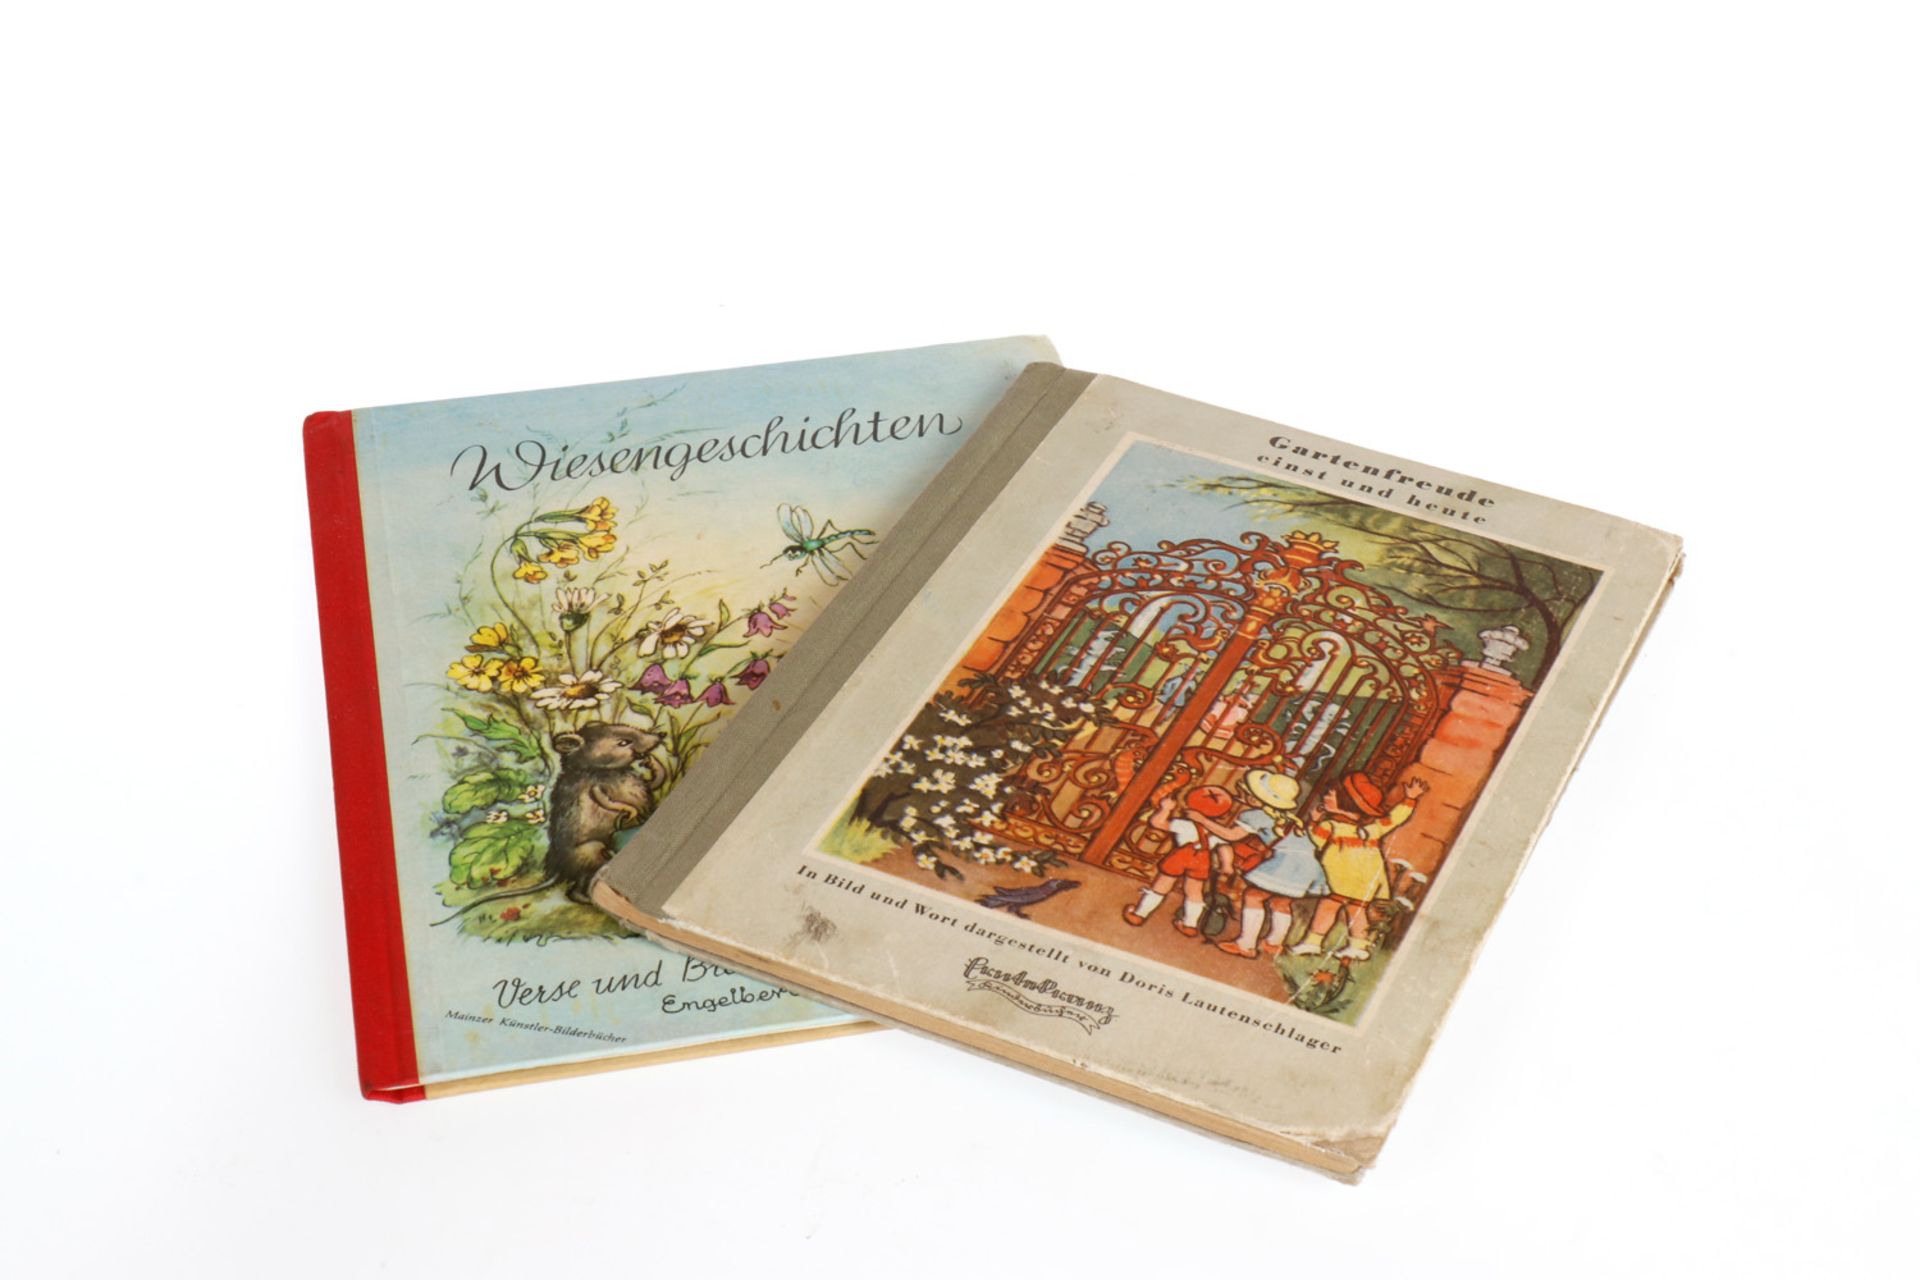 2 Kinderbücher: 1 x "Gartenfreude einst und heute", Erntekranz Verlag 1942, 1 x "Wiesengeschichten",